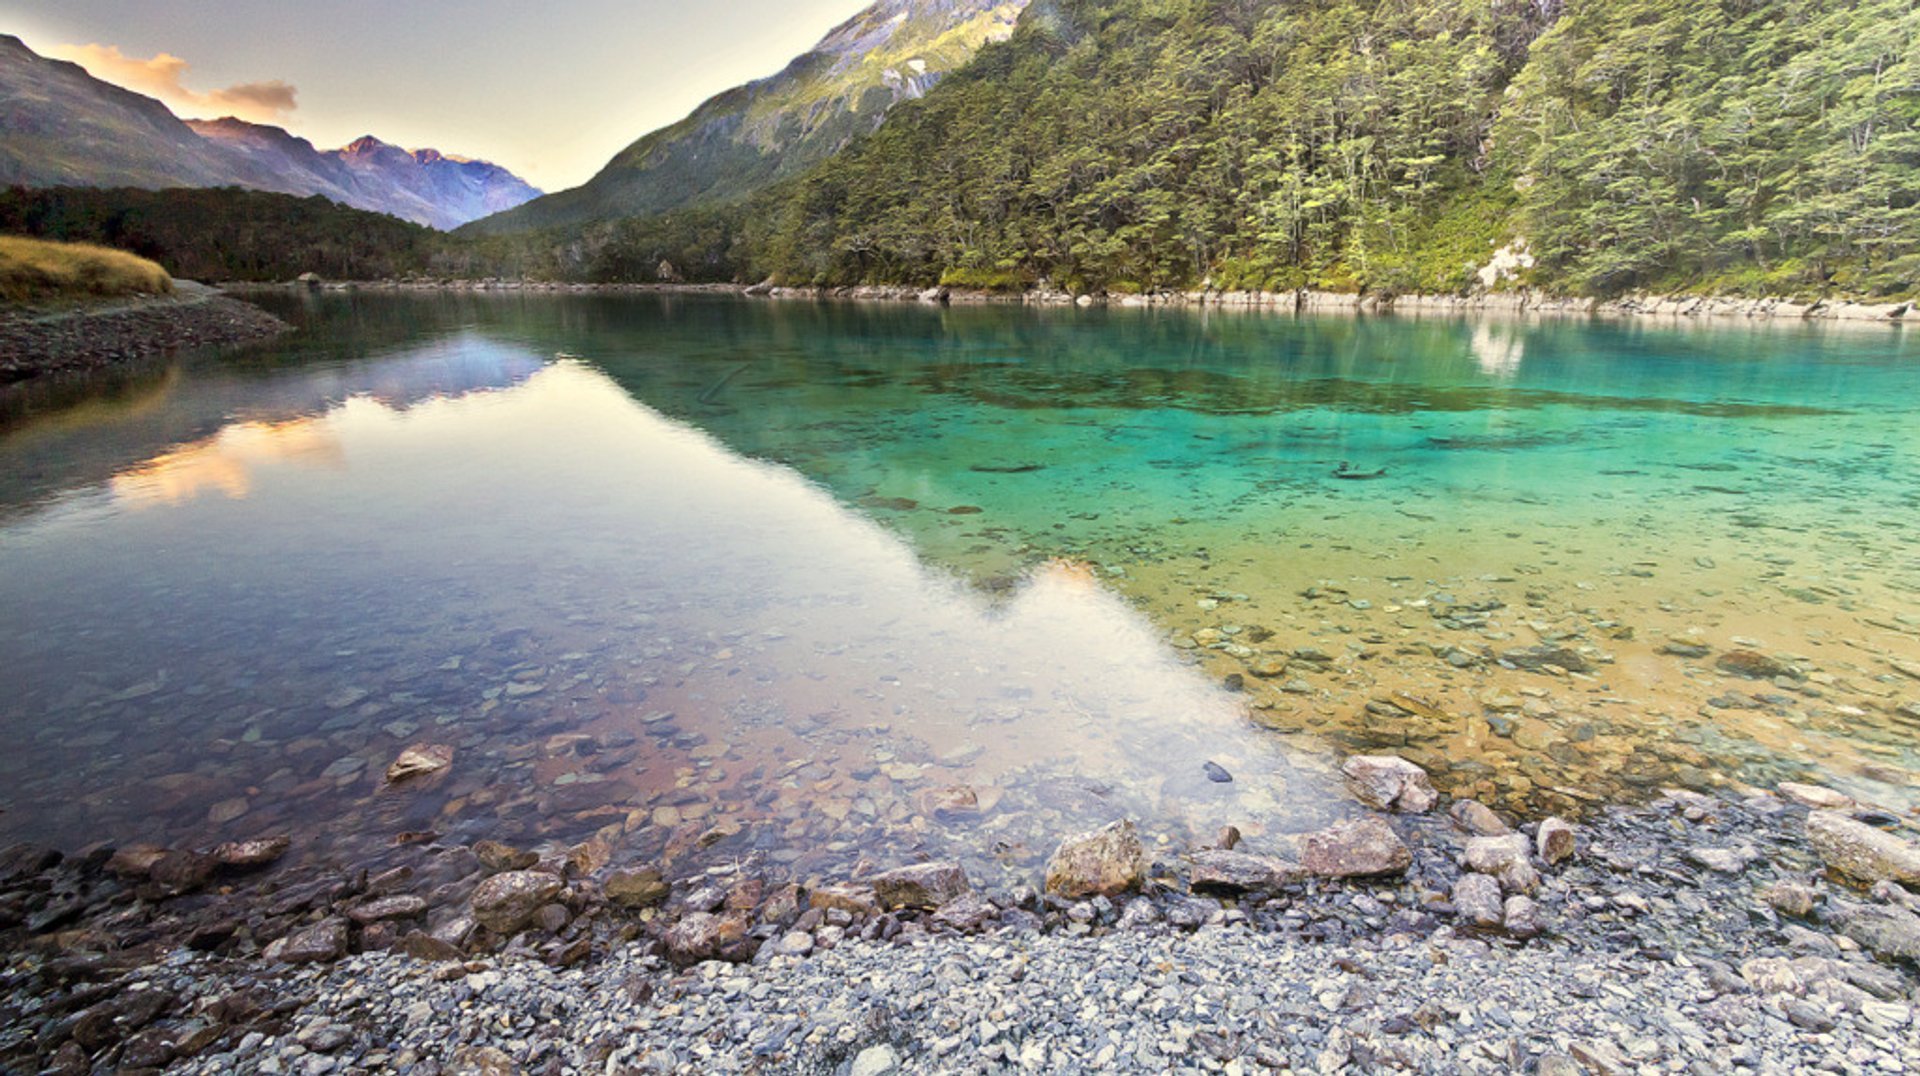 Самое прозрачное в мире. Нельсон-Лейкс голубое озеро. Голубое озеро новая Зеландия. Озеро Нельсон в новой Зеландии. Голубое озеро в национальном парке Нельсон Лейкс.